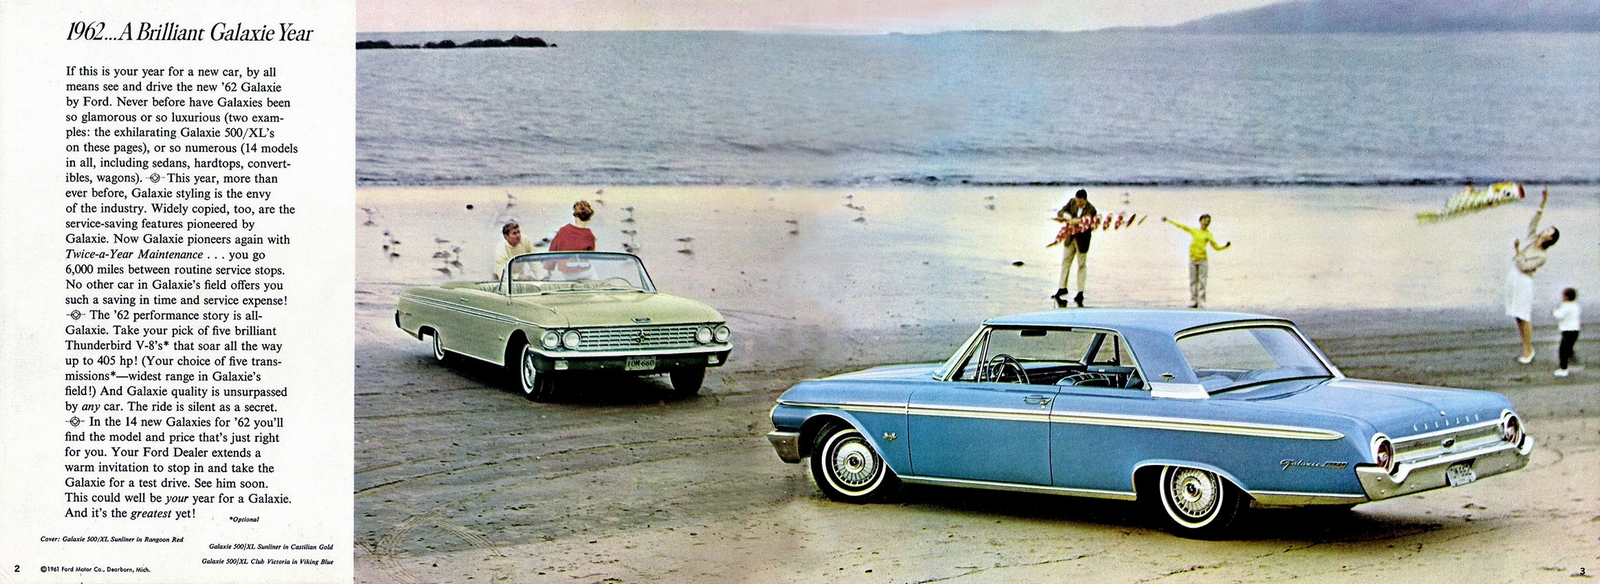 n_1962 Ford Full Size Prestige (Rev)-02-03.jpg